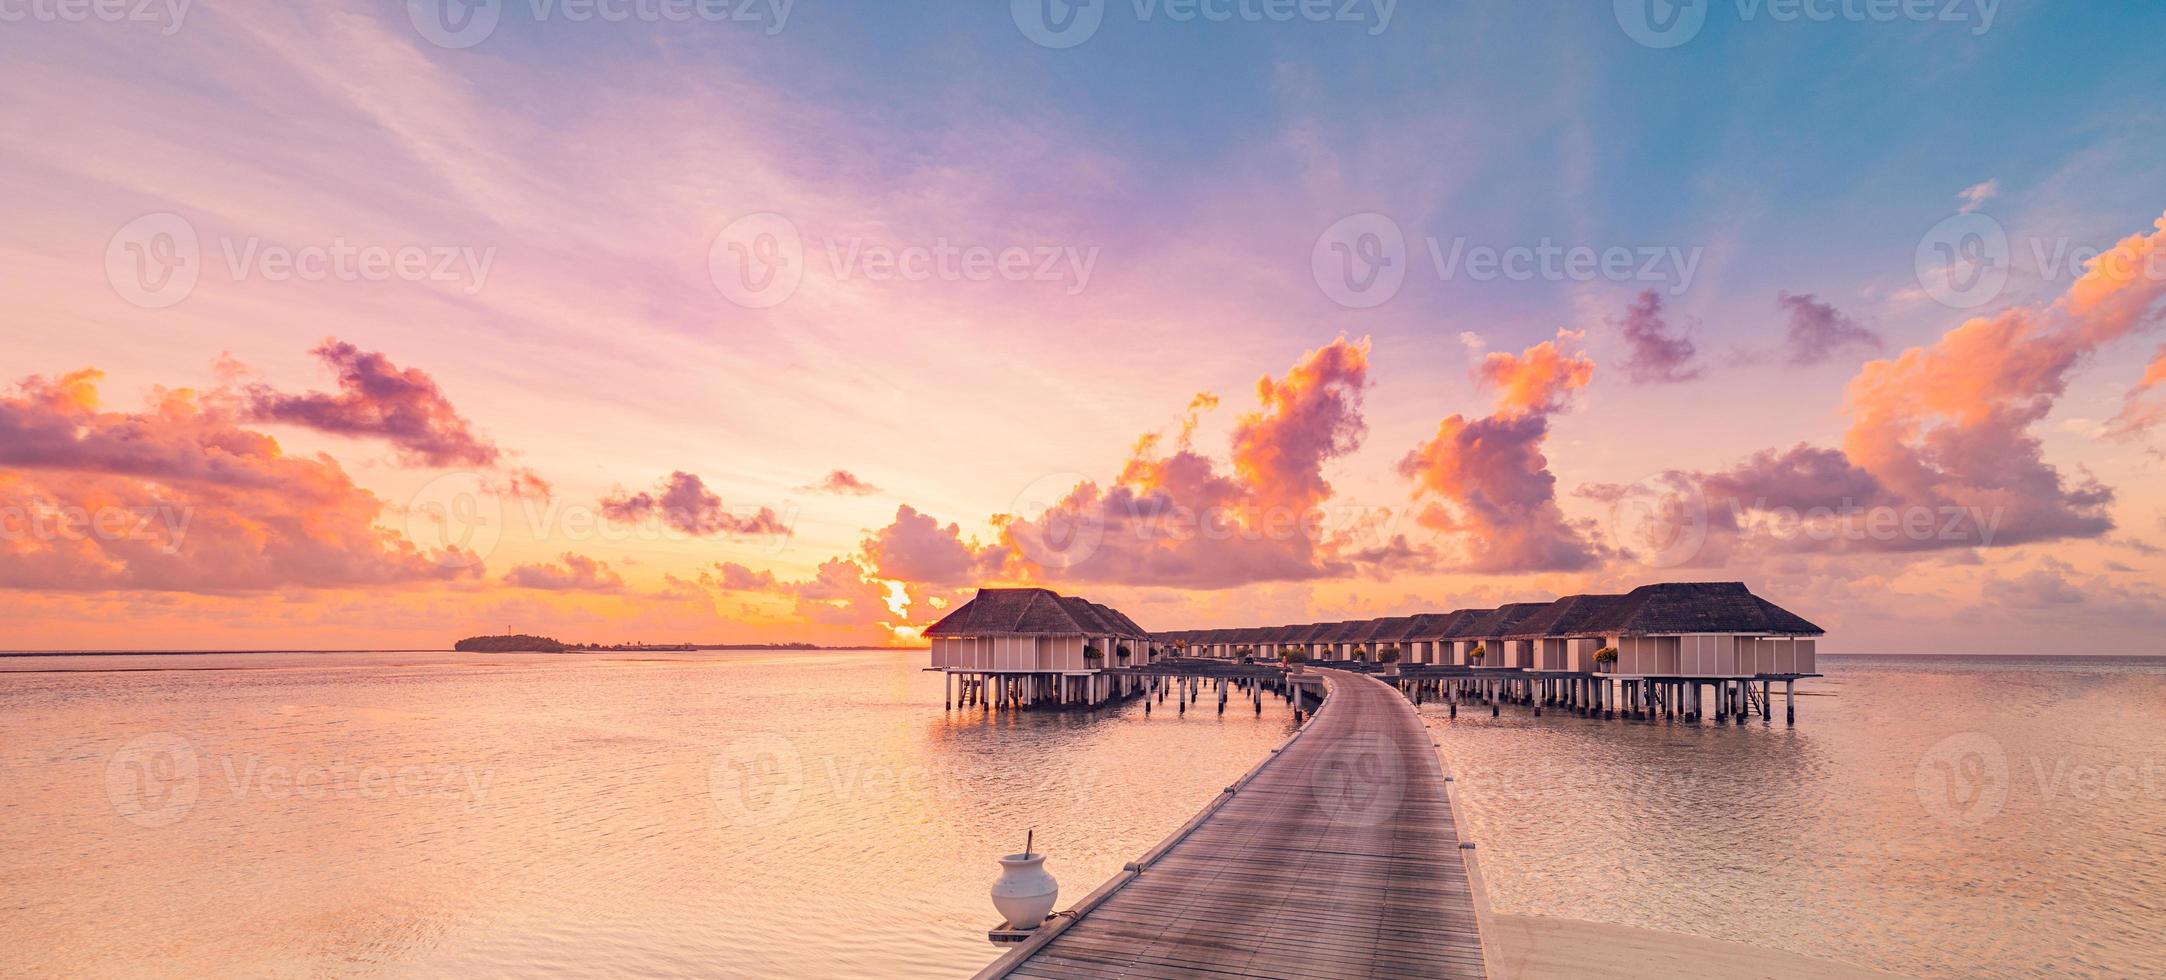 sorprendente tramonto panorama a Maldive. lusso ricorrere ville paesaggio marino con colorato cielo colorato nuvole, sole raggi. bellissimo rilassante laguna e sognare costa. fantastico spiaggia, estate vacanza vacanza foto